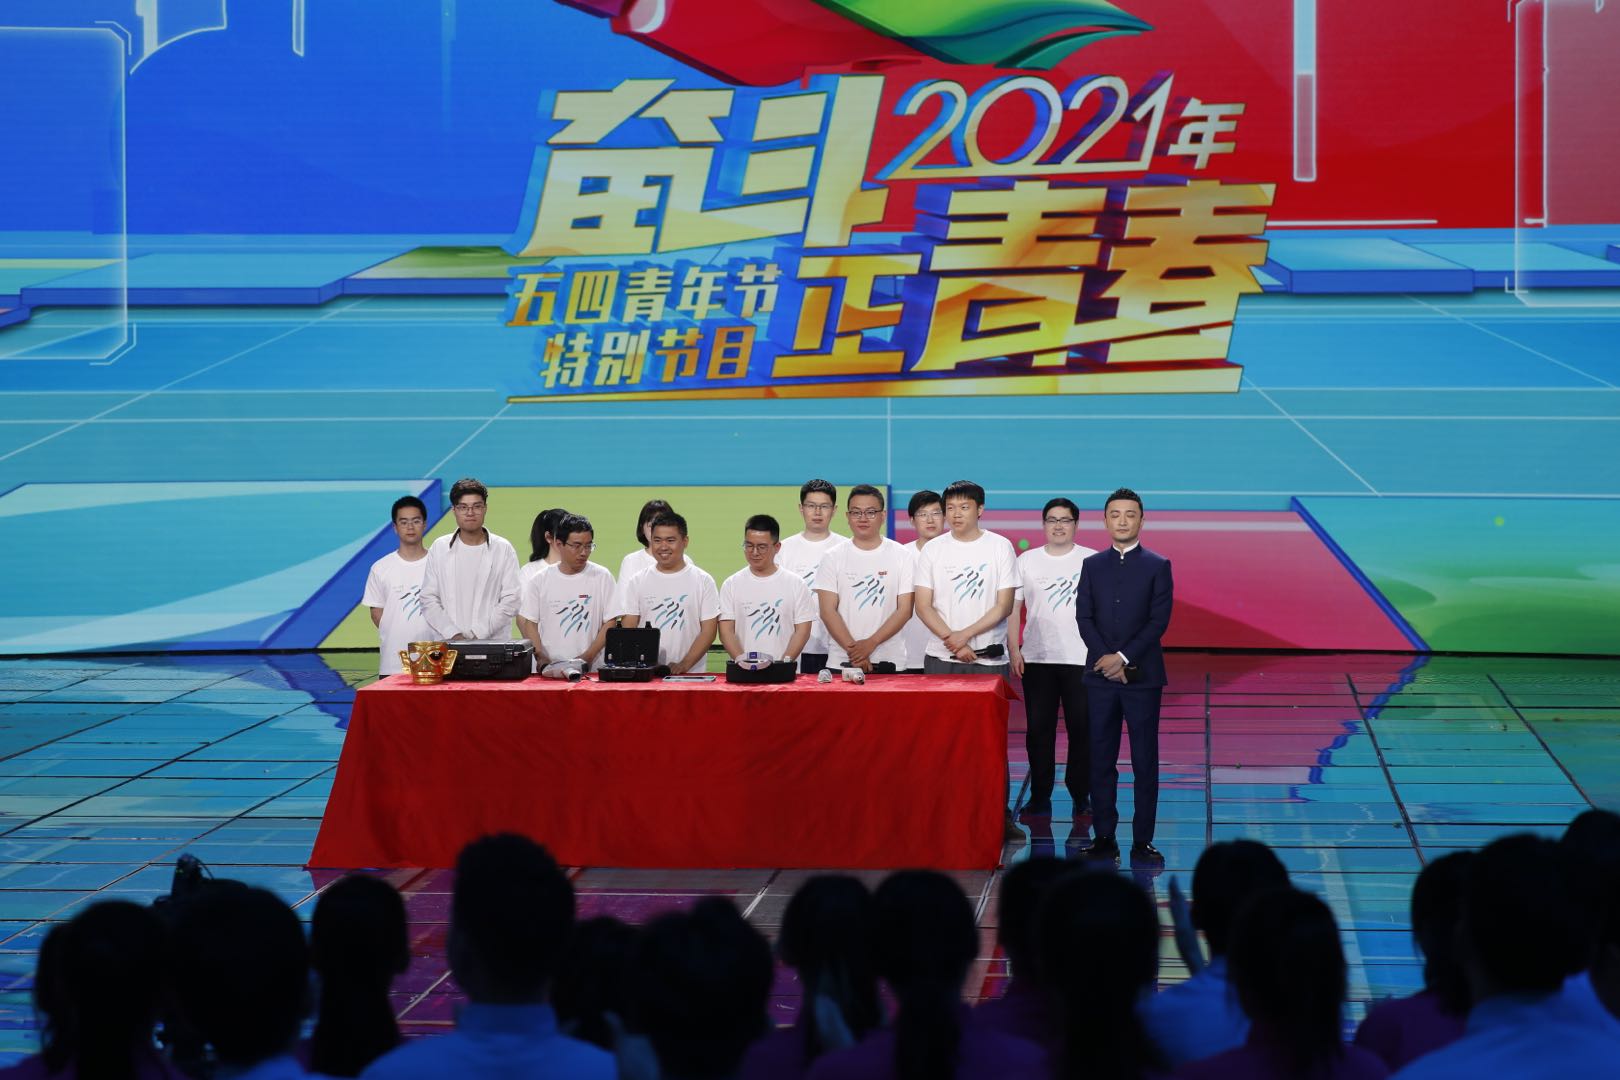 共青团中央指导,中央广播电视总台承办的《奋斗正青春——2021年五四